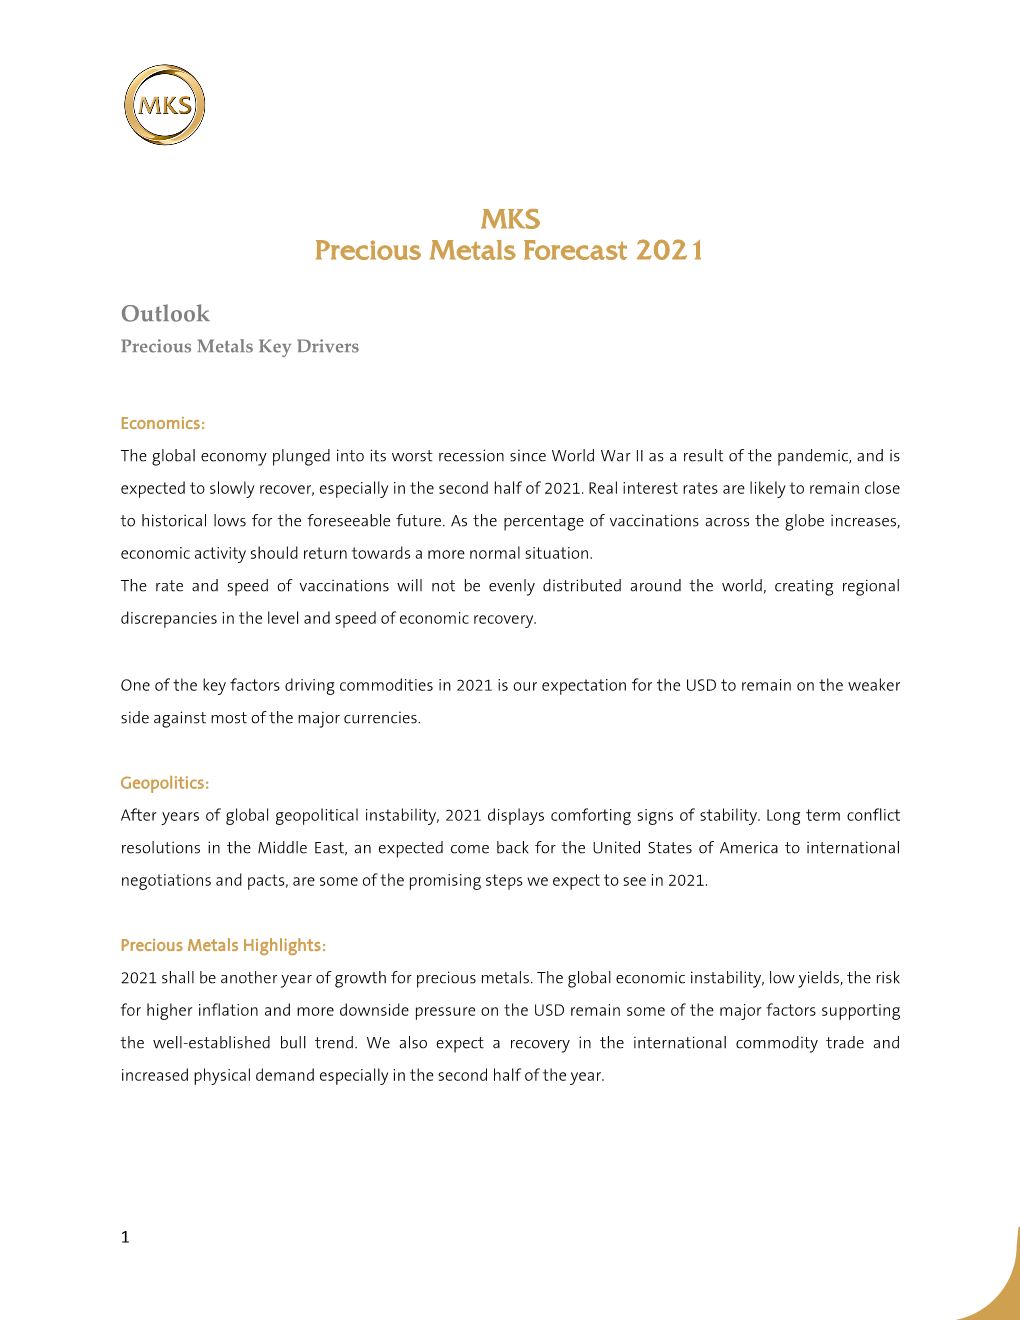 MKS Precious Metals Forecast 2021